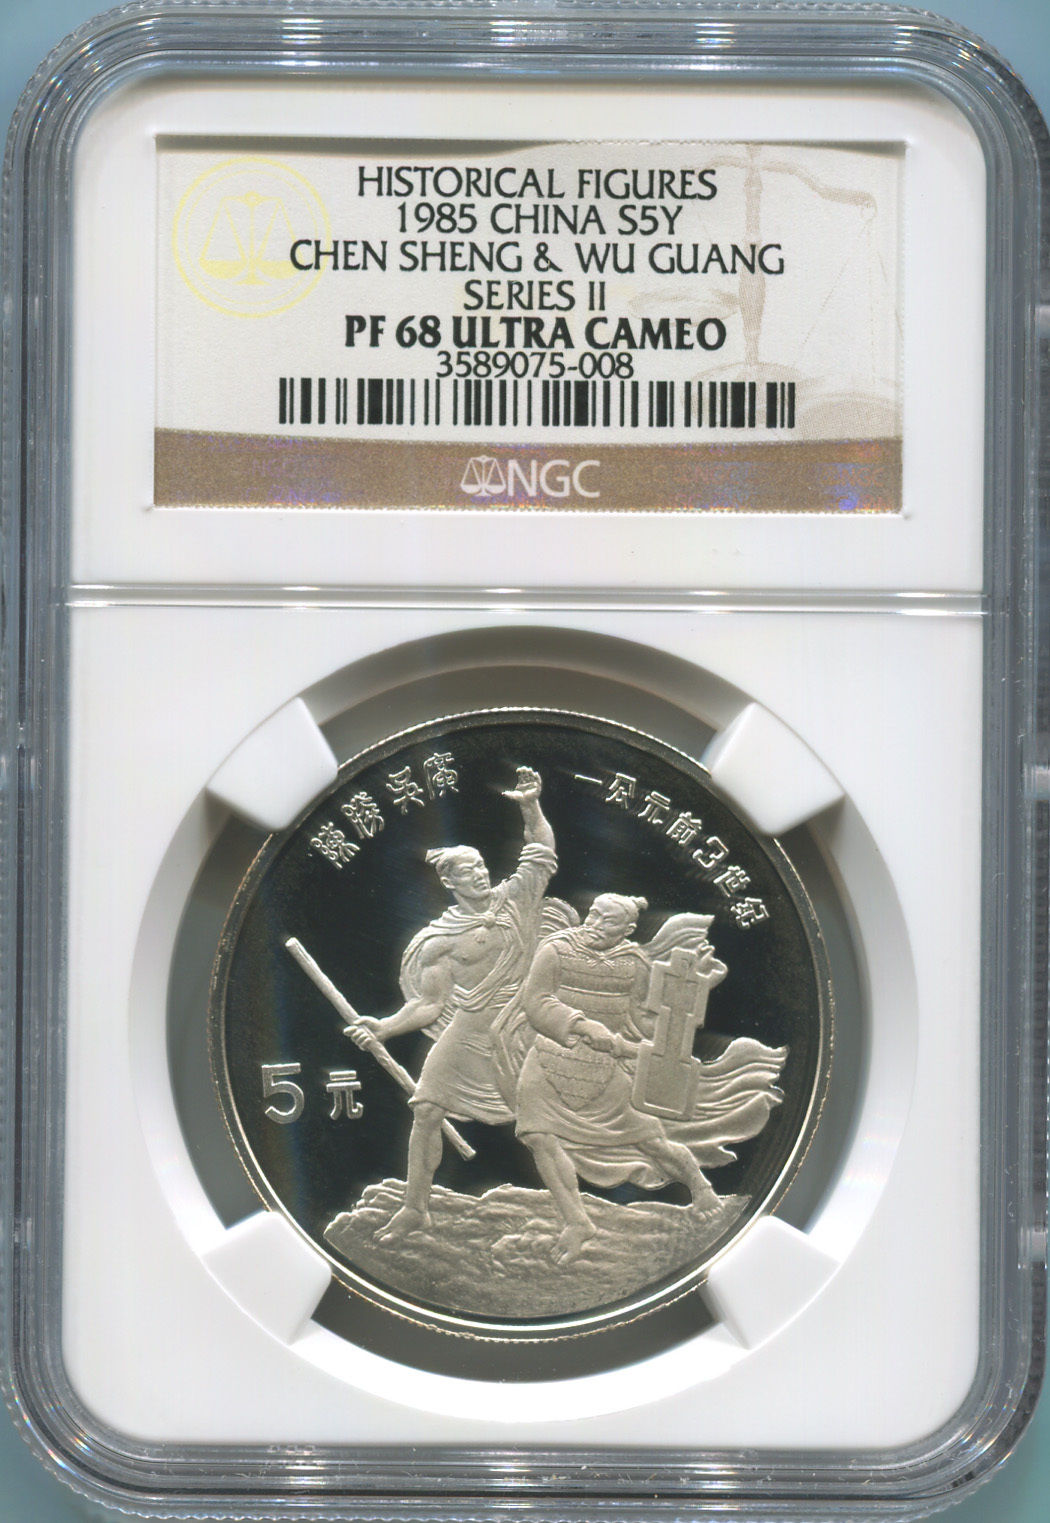 Historical Figures. 1985 China Silver 5 Yuan. Chen Sheng. NGC PF68 U.C. Image 1